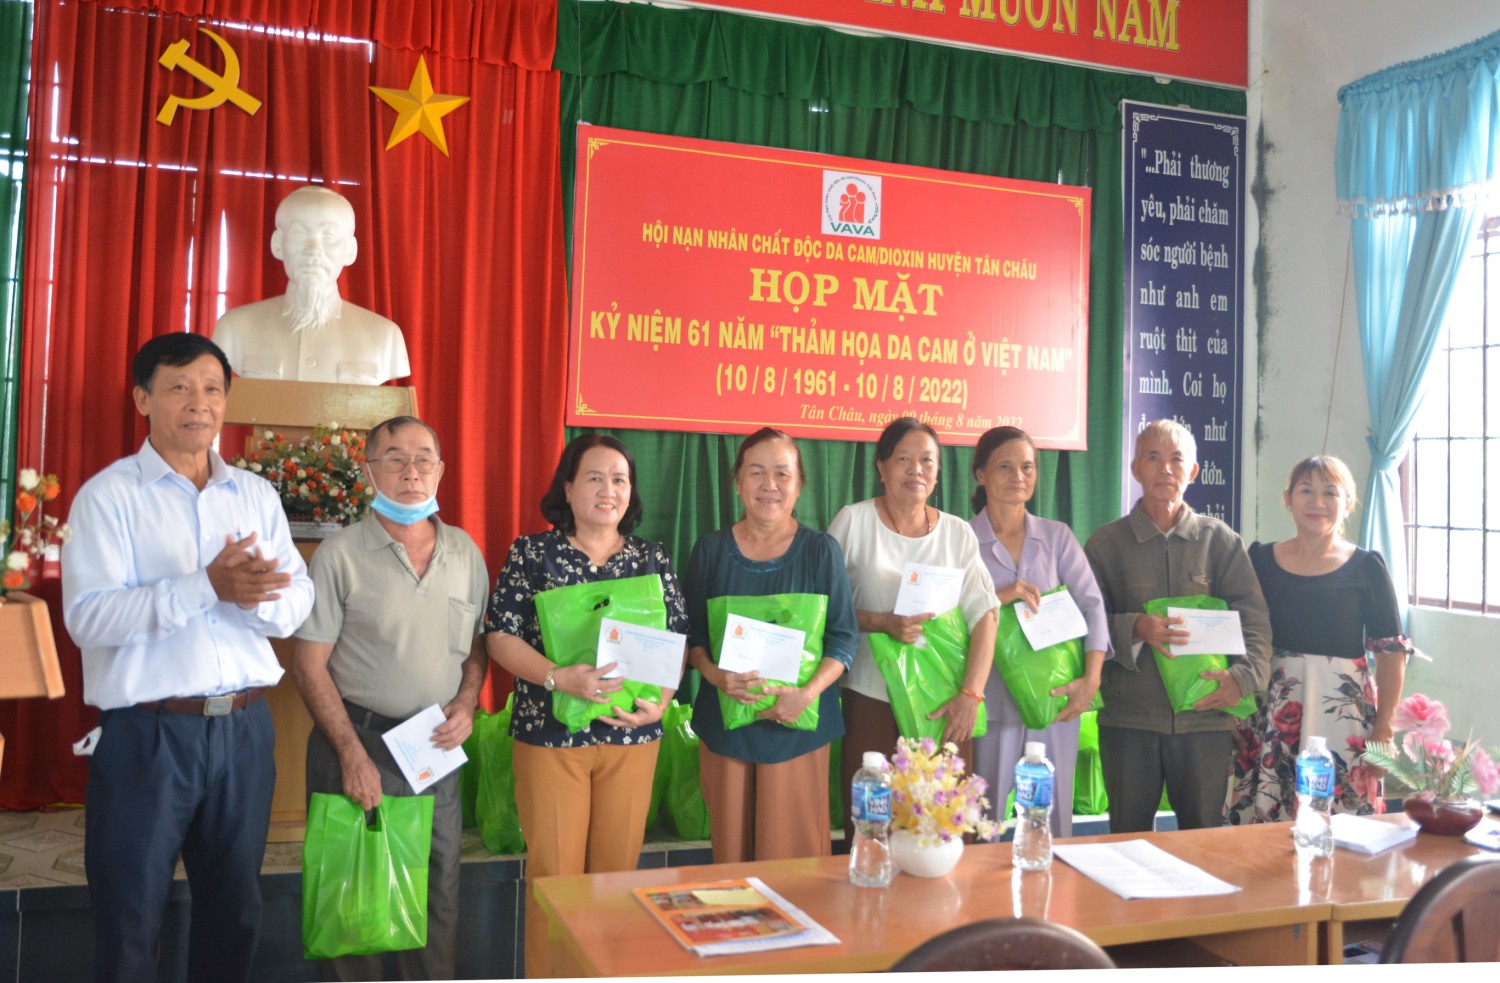 Hội nạn nhân chất độc da cam/dioxin huyện  Tân Châu họp mặt, tặng quà cho các nạn nhân